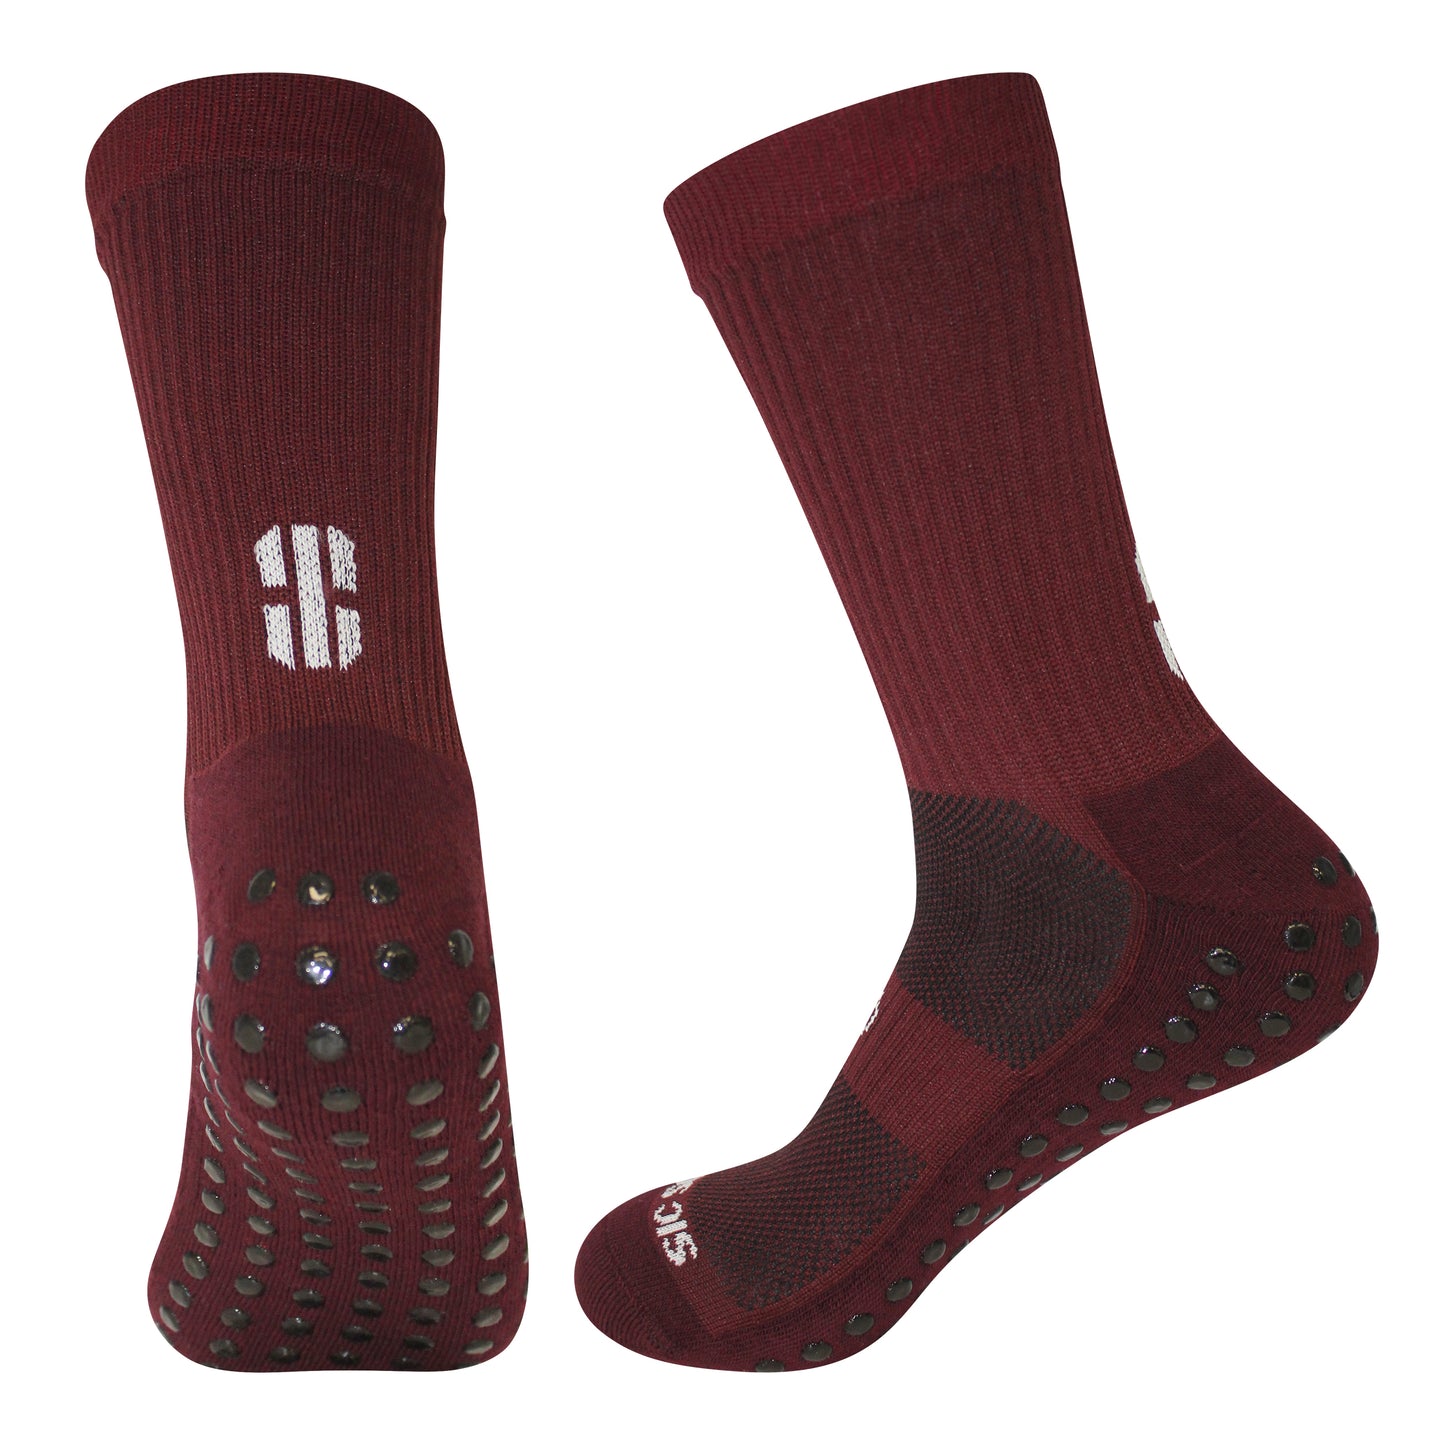 FootGripz Mid Grip Socks | Maroon